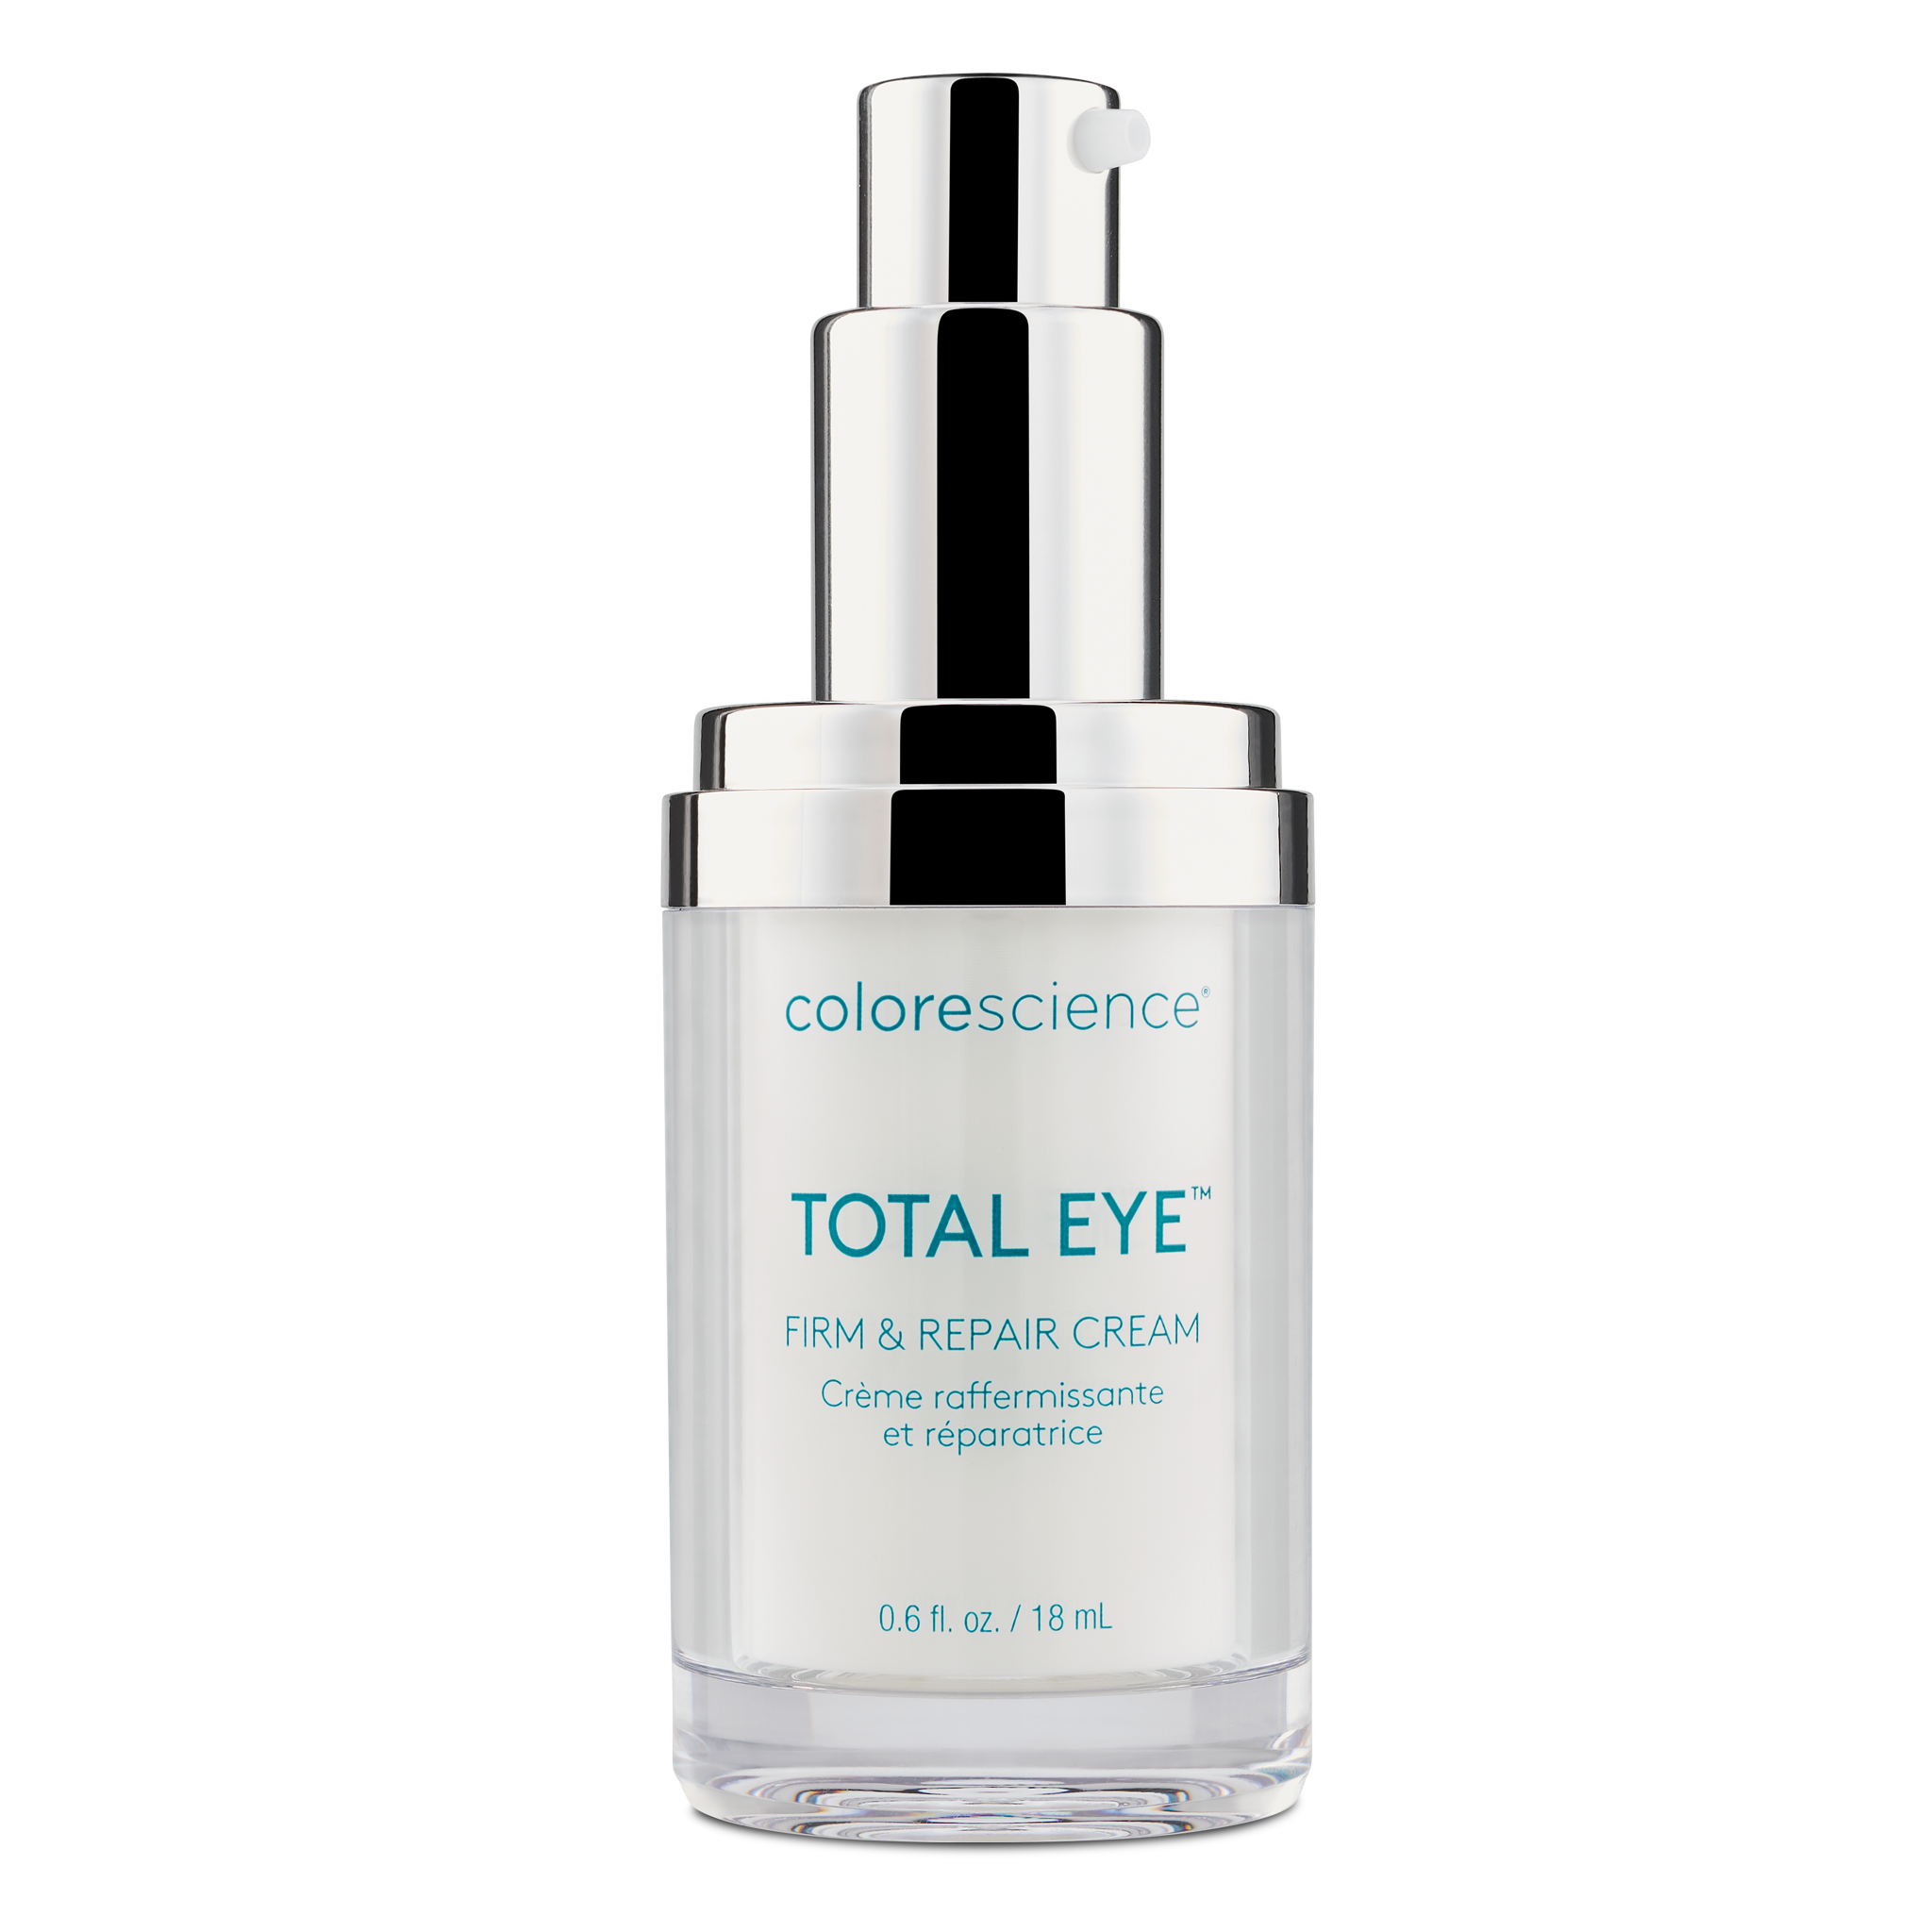 Image of Total Eye® Firm & Repair Cream